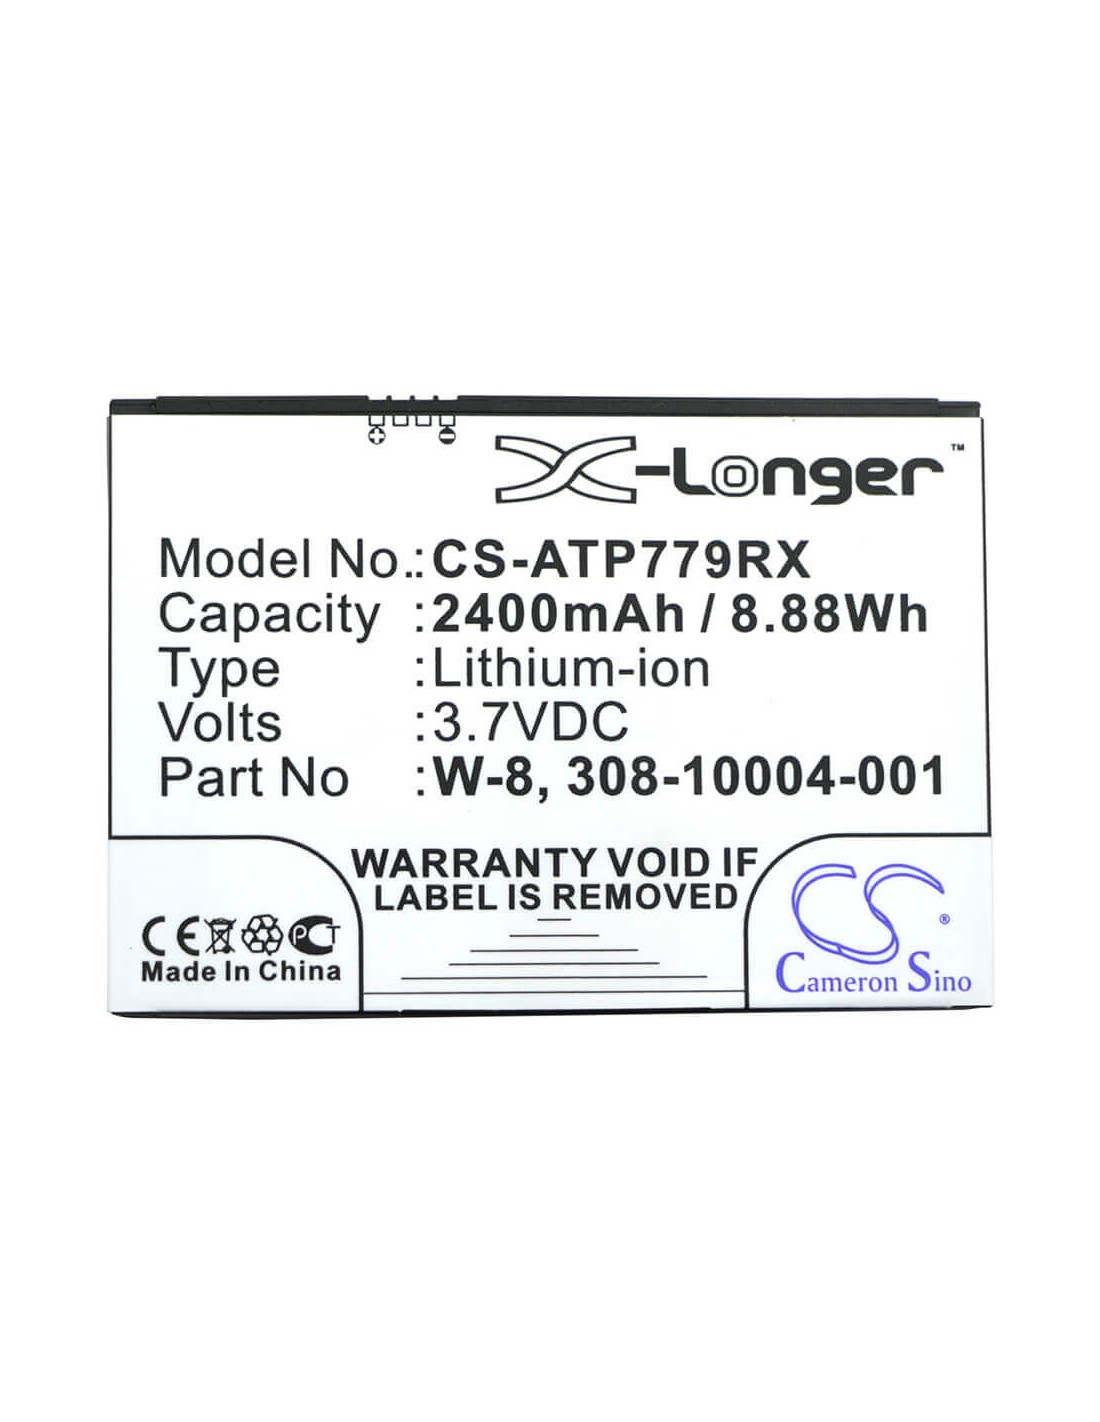 Battery for At&t Ac779s, Aircard 779s, Aircard 779s 4g 3.7V, 2700mAh - 9.99Wh